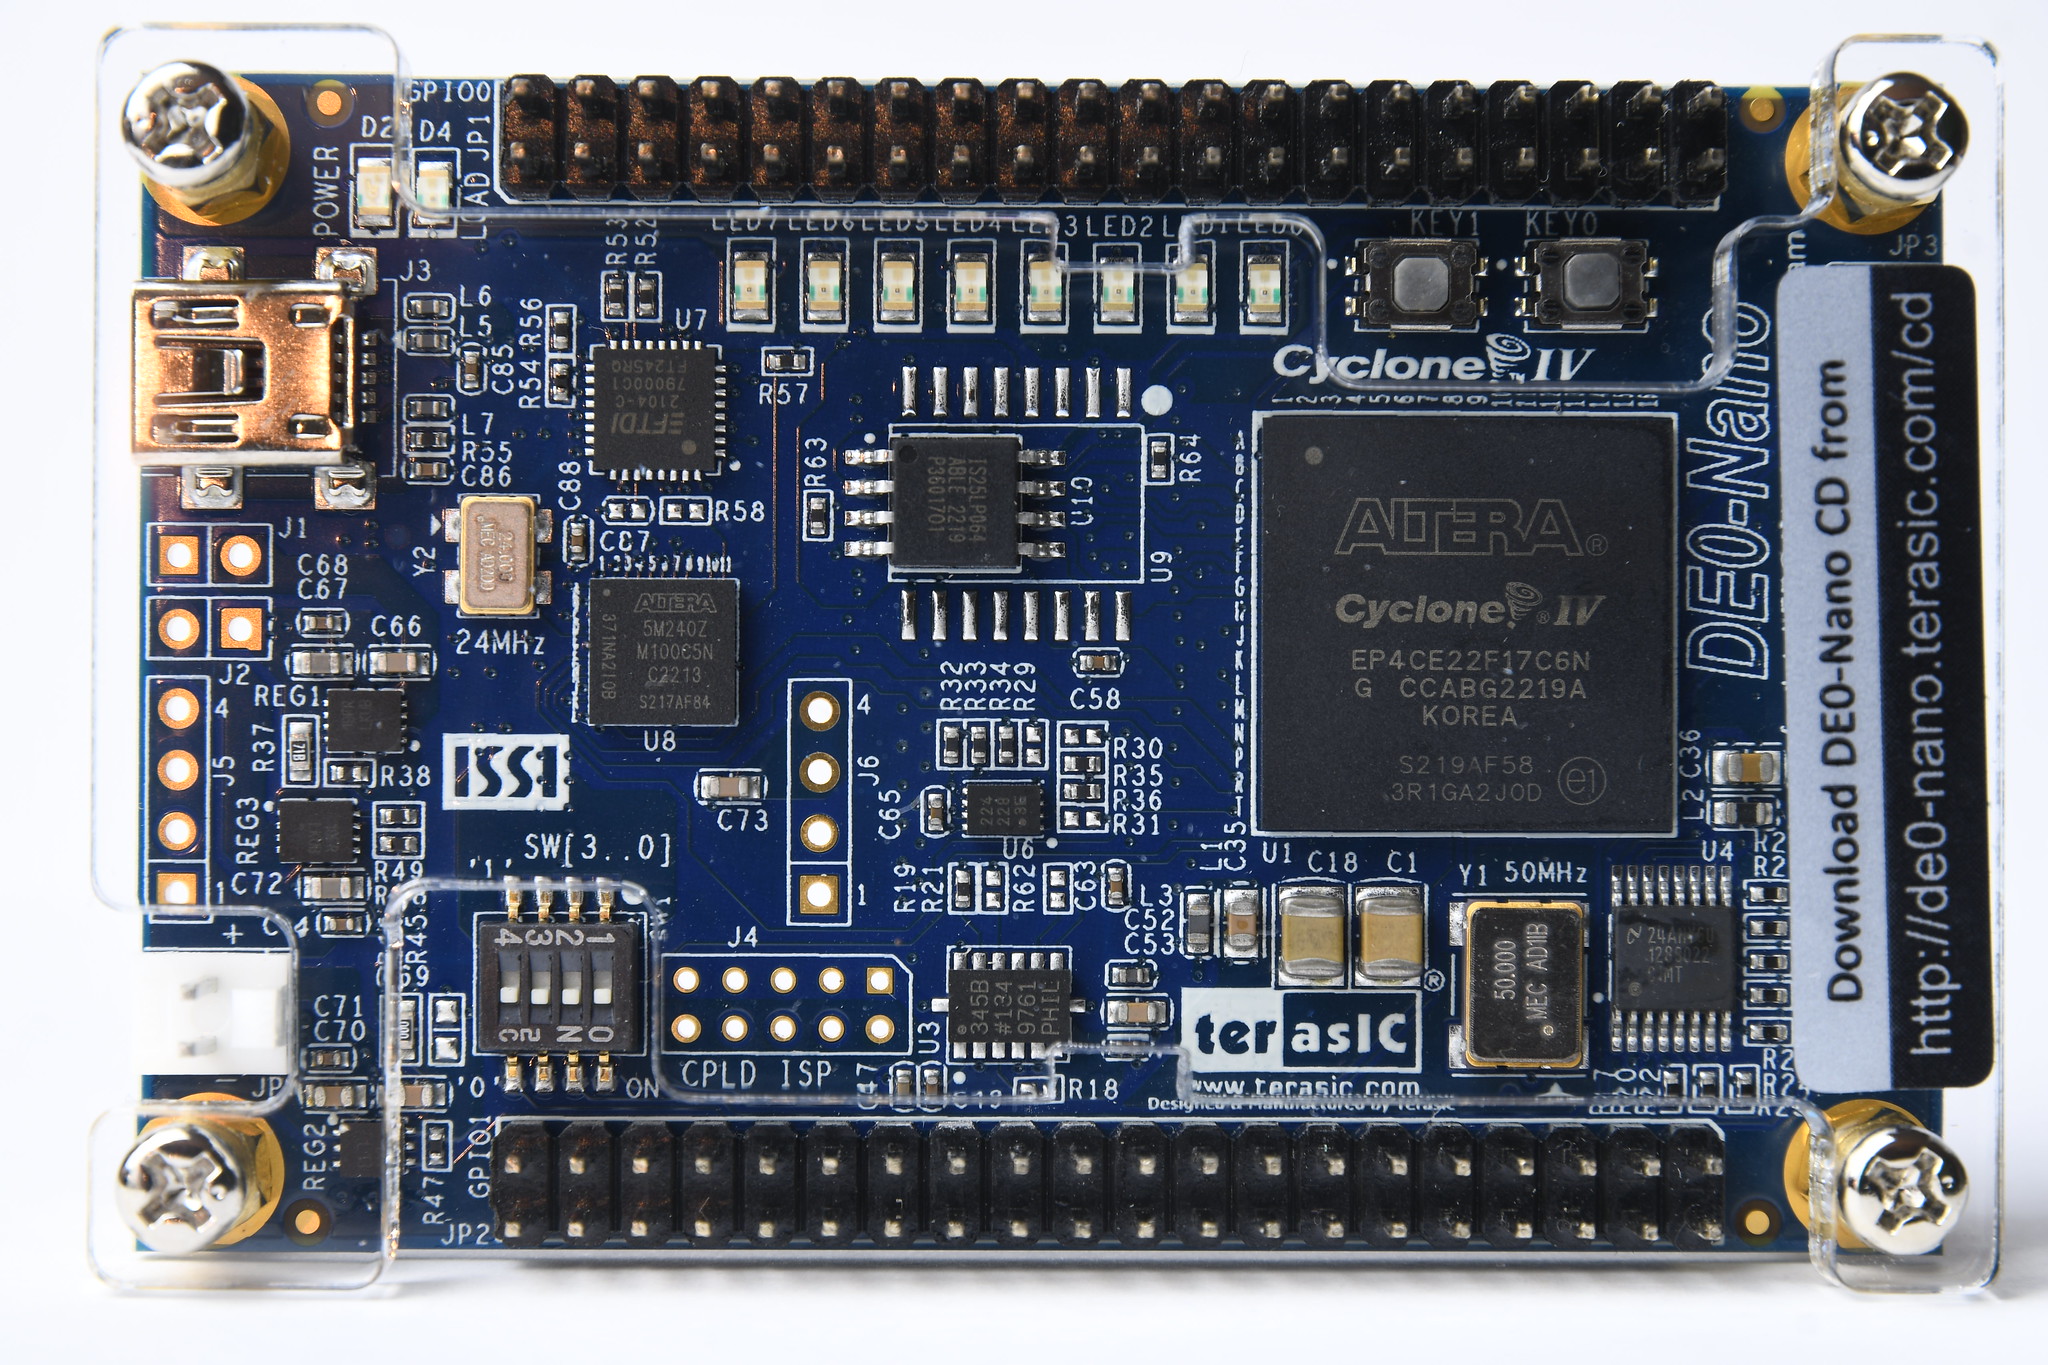 FPGAs Board by Altera